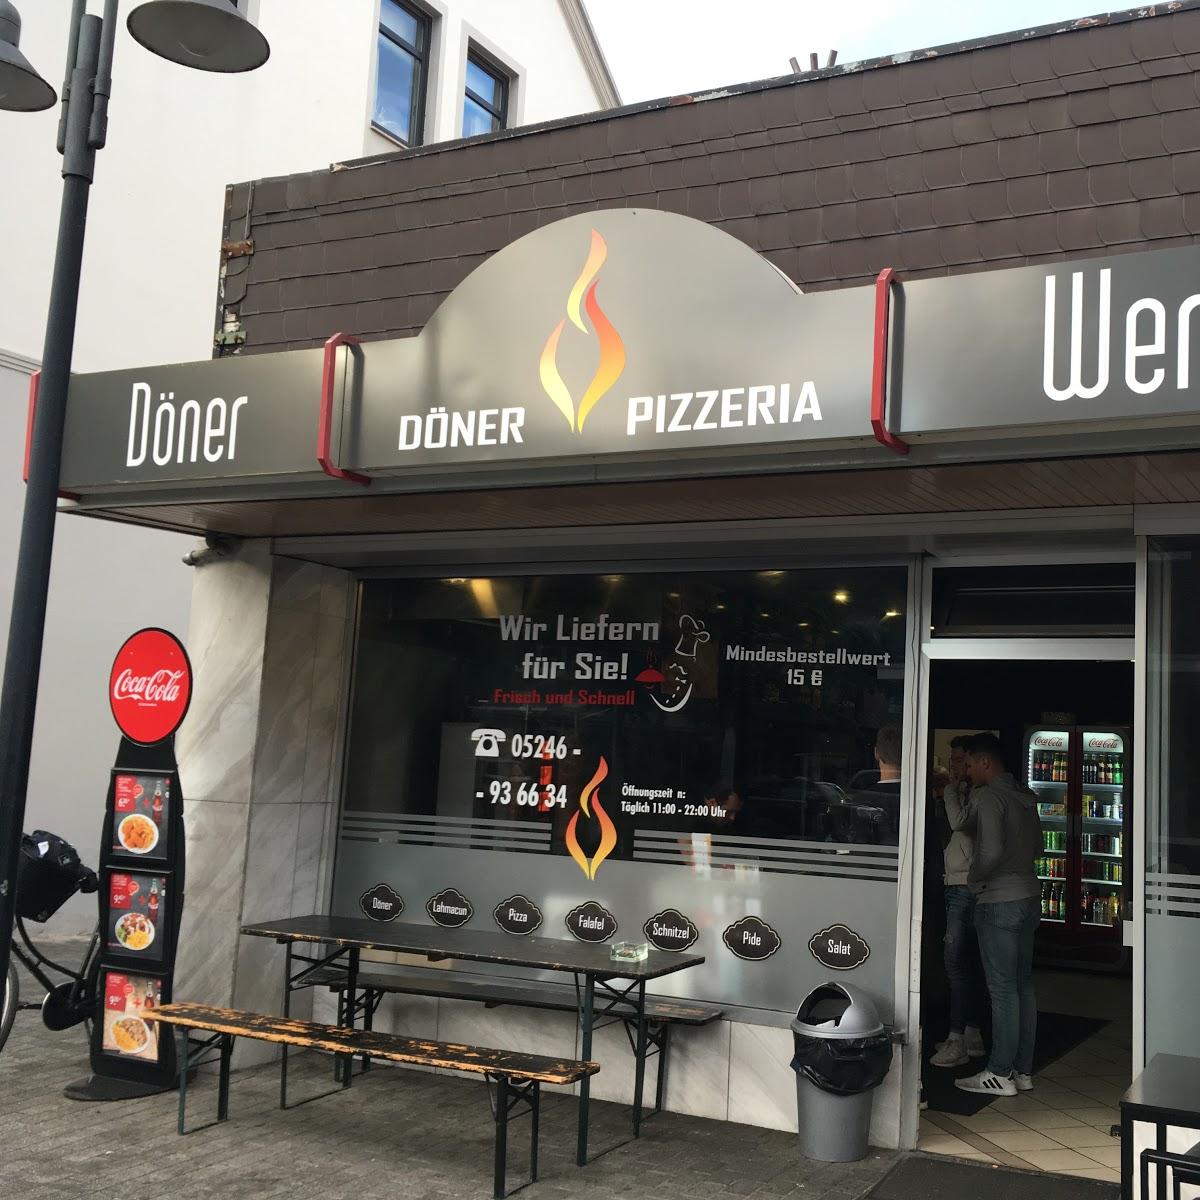 Restaurant "Döner Werk" in Verl